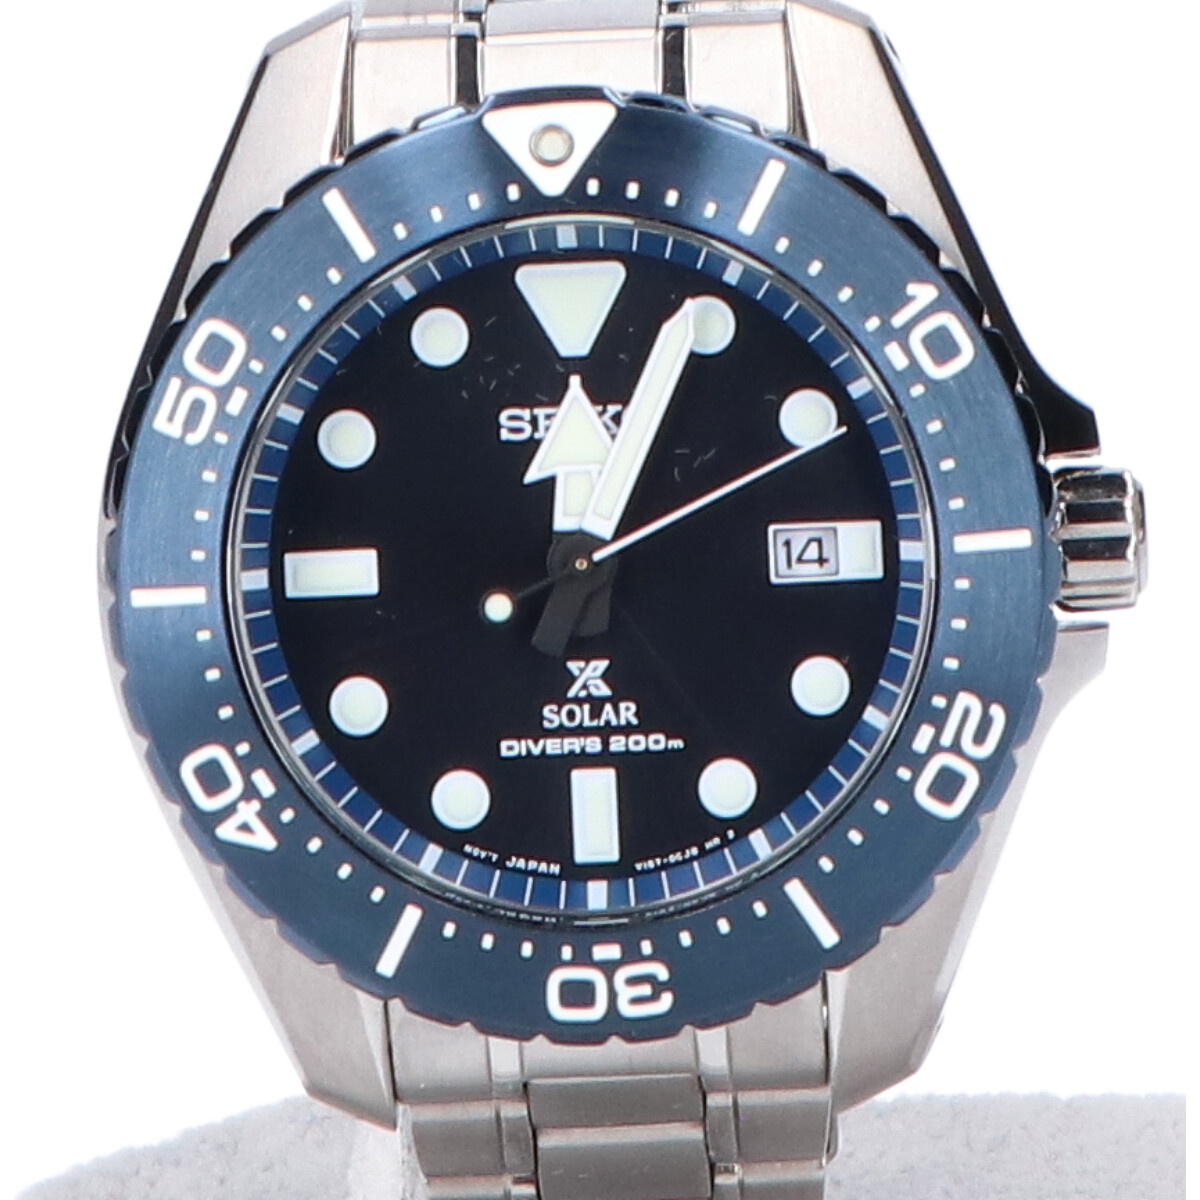 セイコーのSBDJ011 Cal.V157 PROSPEX/プロスペックス ダイバースキューバソーラー腕時計の買取実績です。